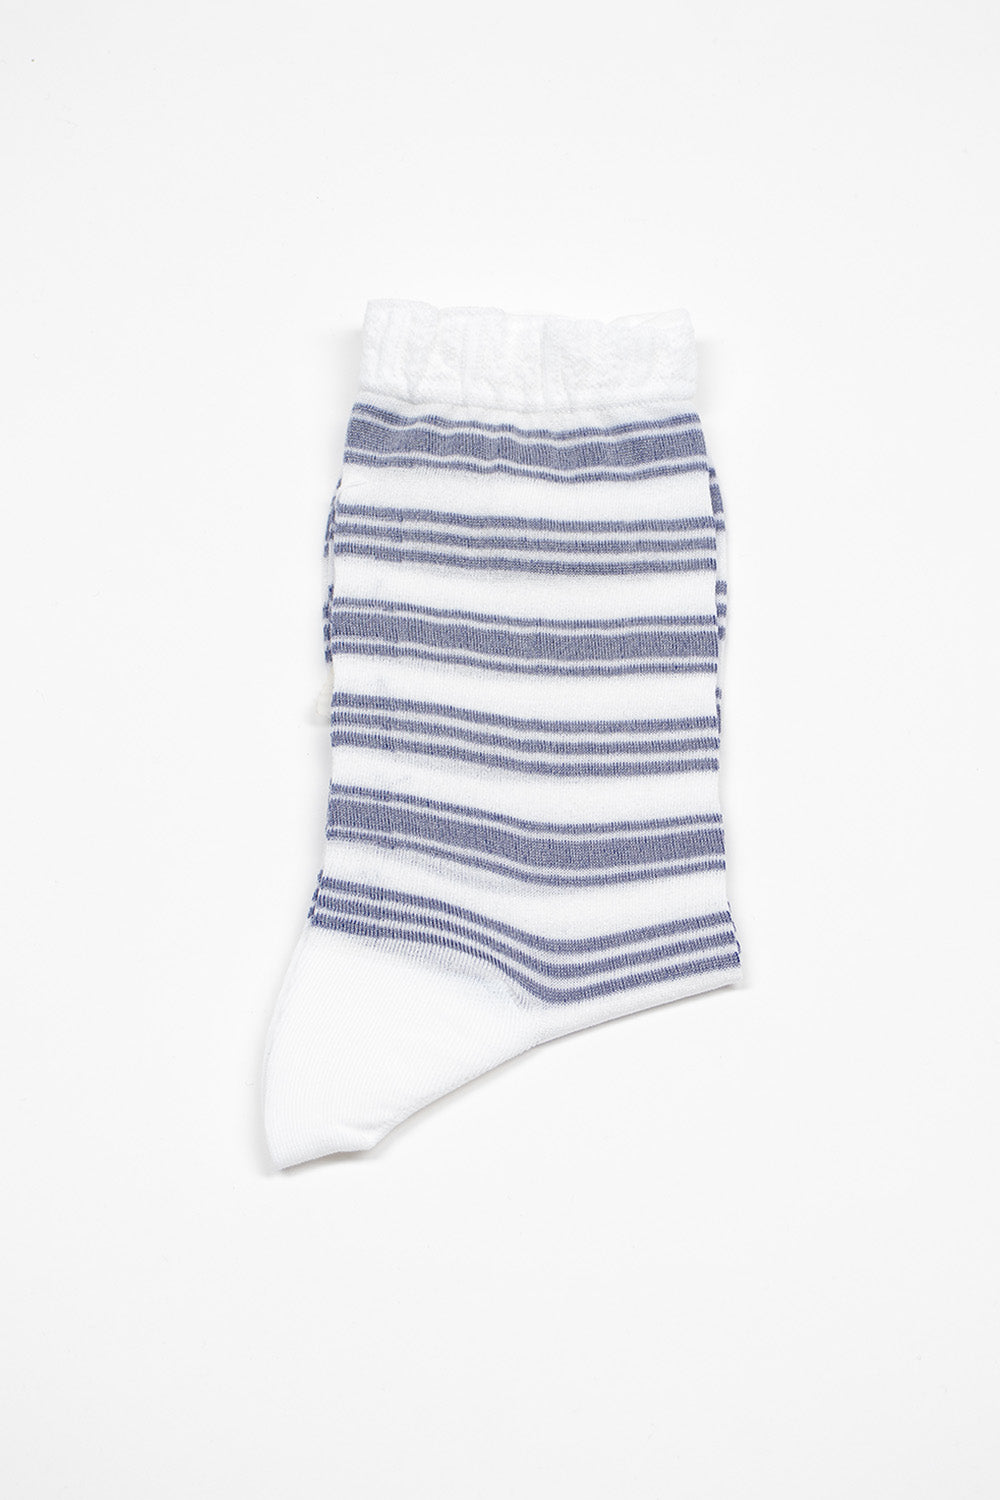 AM-781 Border Socks Blue/White